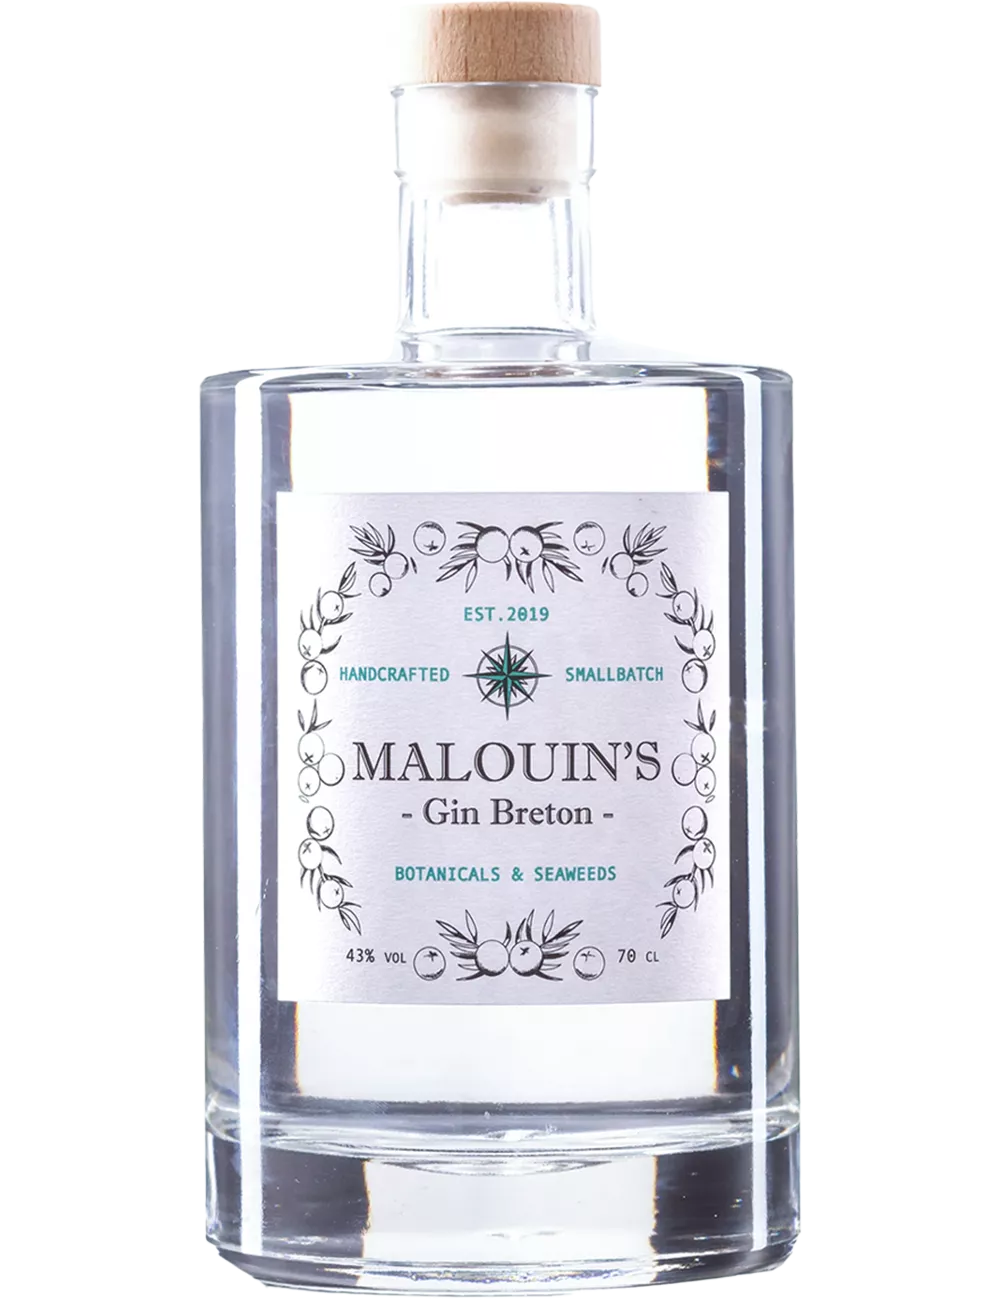 Malouin's - Distilled gin